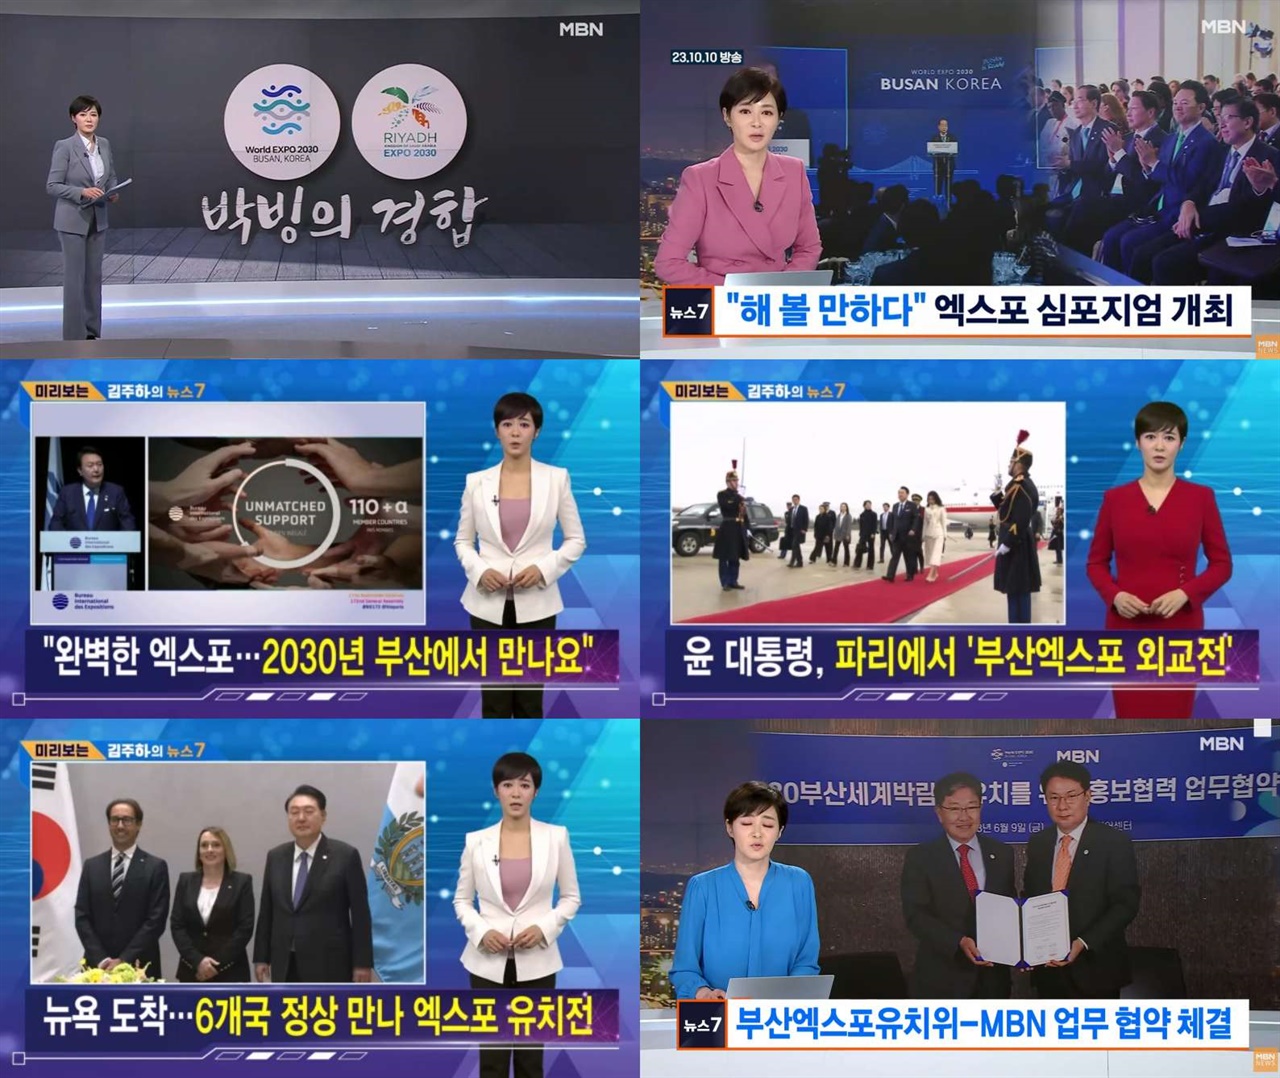 MBN 김주하 앵커가 그동안 보도한 엑스포 관련 뉴스들 